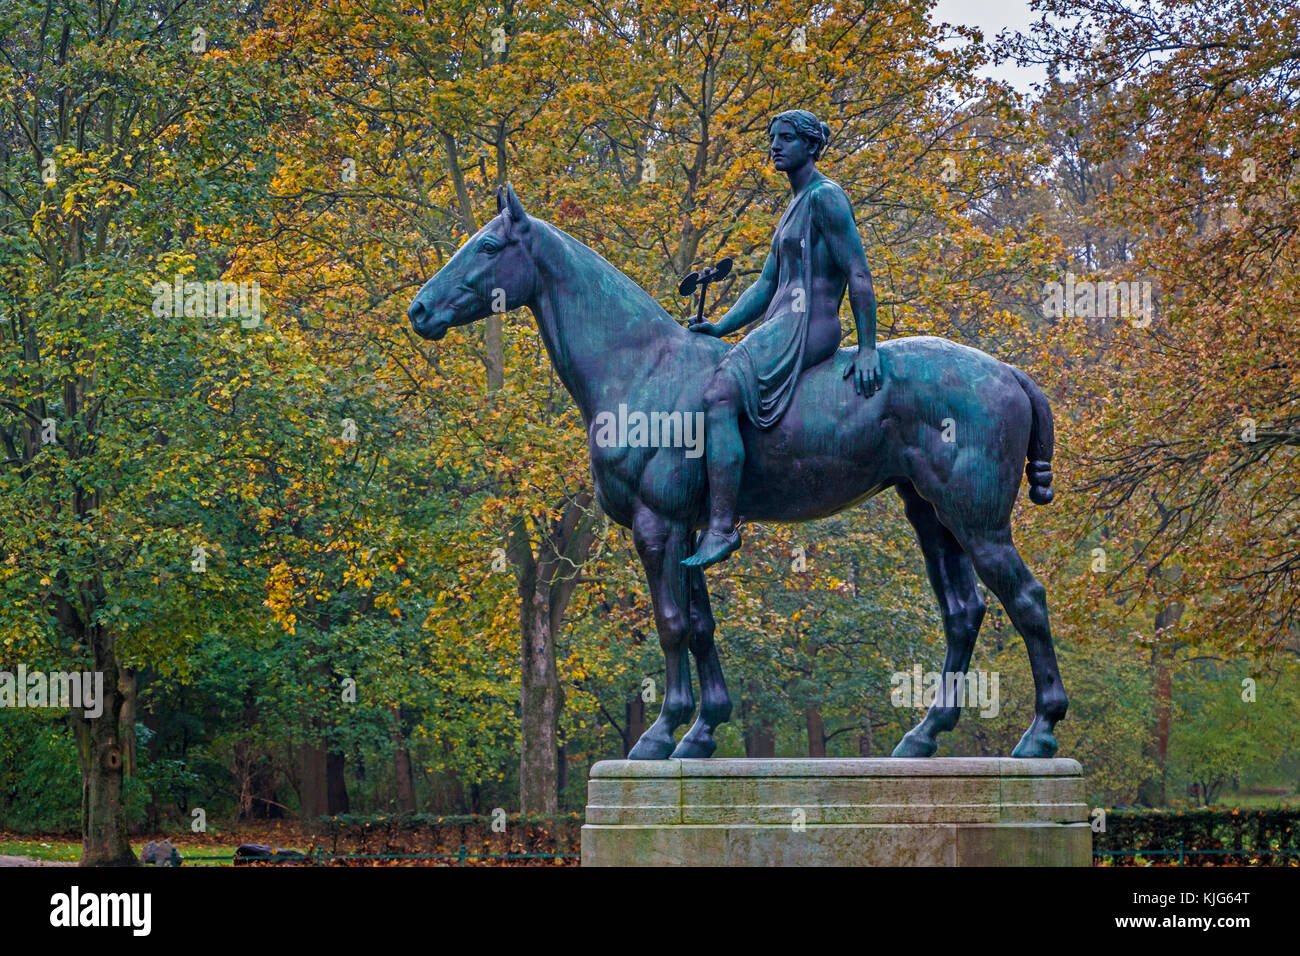 Die 1895 Amazone zu Pferde oder Amazon zu Pferd Skulptur von preußischen  Bildhauer Louis Tuaillon im Tiergarten in Berlin, Deutschland, EU  Stockfotografie - Alamy